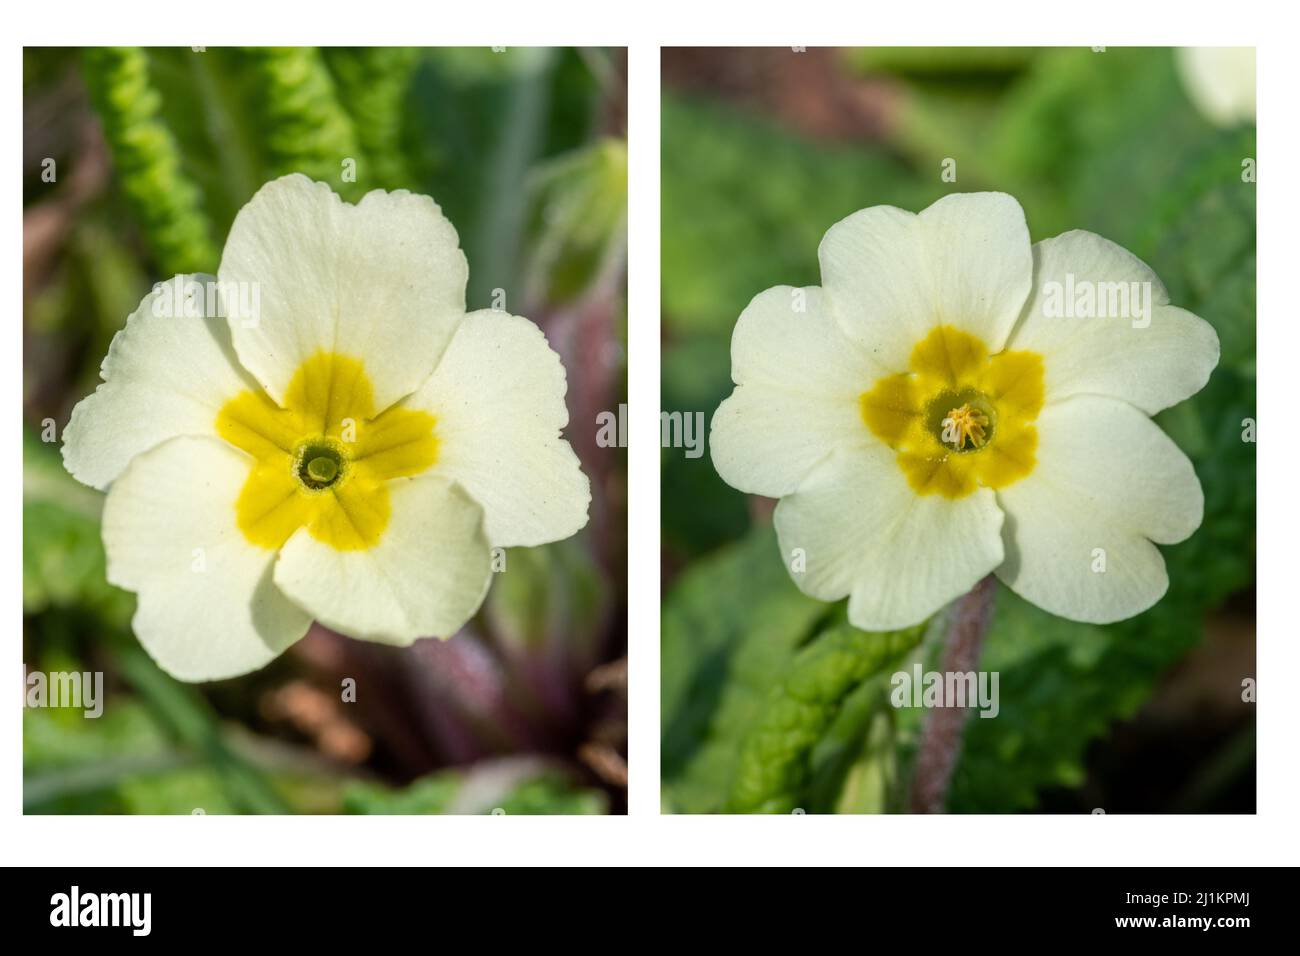 Primrose (Primula vulgaris), un fiore di primavera, Regno Unito. Primo piano dei due tipi di fiori, fiori ad occhio puntato (sinistro) e ad occhio puntato (destro). Foto Stock